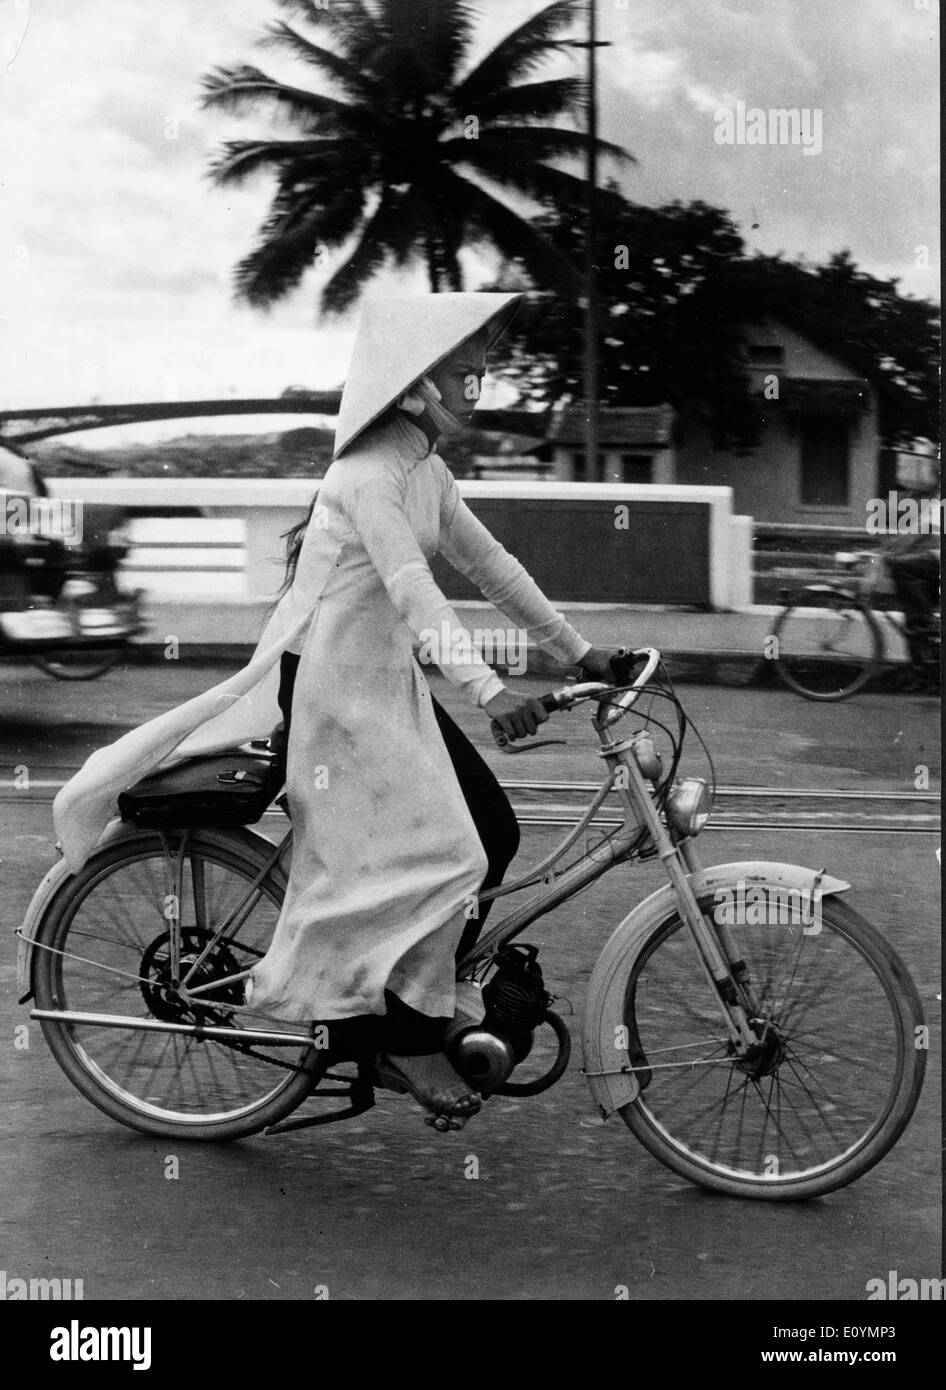 Ottobre 10, 1970 - a Saigon, Vietnam - Una donna vietnamita sulla sua bicicletta a Saigon, Vietnam. Negli anni cinquanta, gli Stati Uniti hanno cominciato a inviare truppe in Vietnam, durante il seguente periodo di 25 anni, la conseguente guerra potrebbe creare alcuni dei più forti tensioni nella storia degli Stati Uniti. Quasi 3 milioni di noi uomini e donne sono stati inviati a combattere per ciò che è stato una causa discutibili. In totale, si è stimato che oltre 2,5 milioni di persone su entrambi i lati sono stati uccisi. Foto Stock